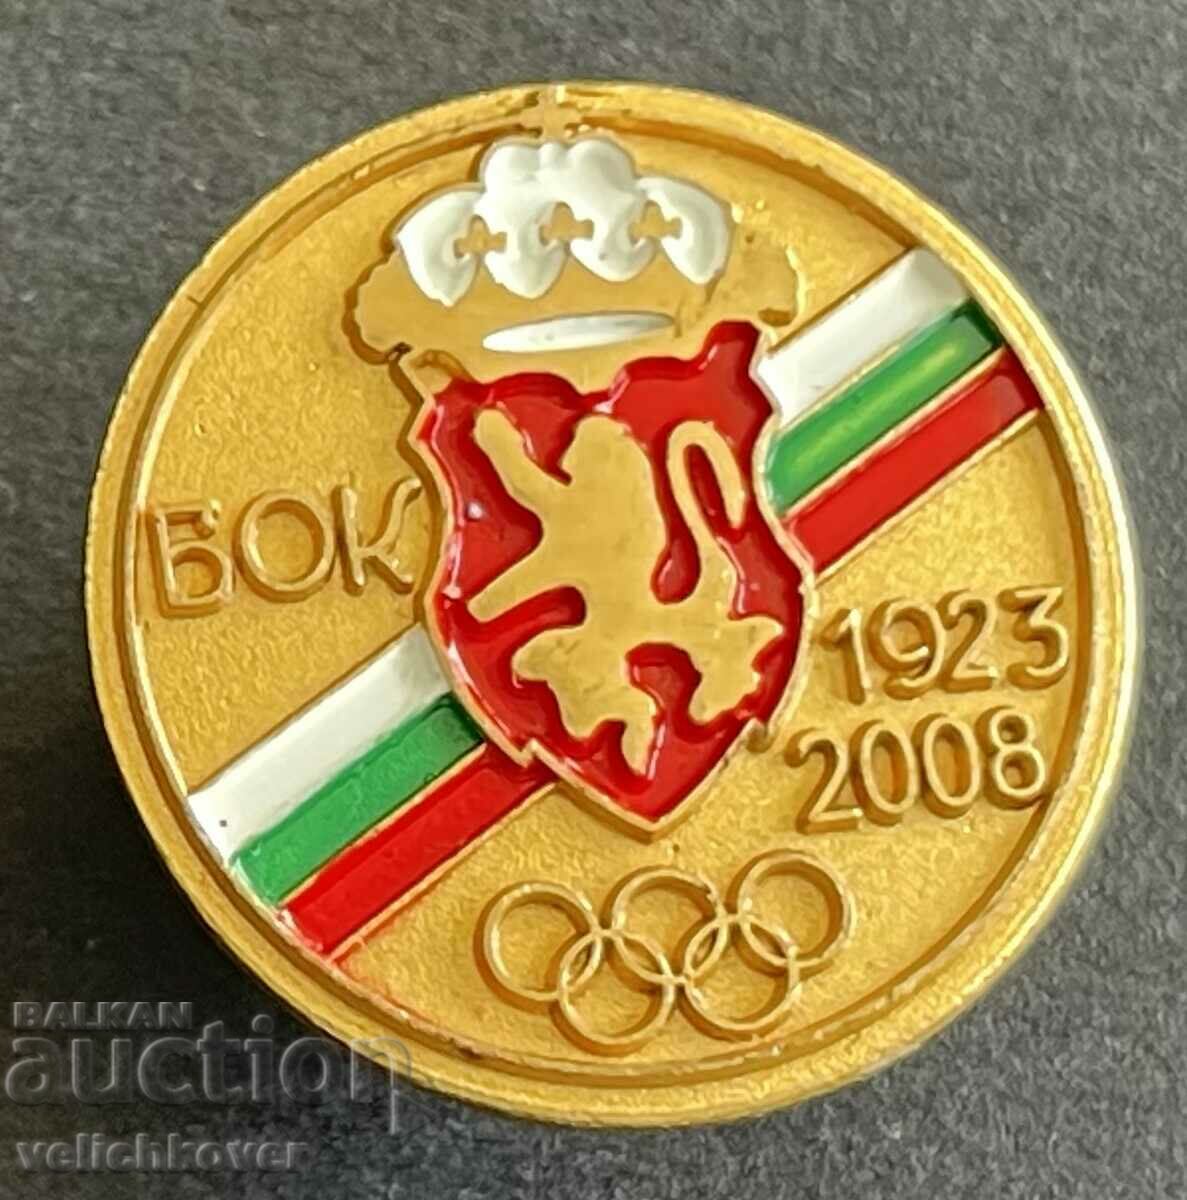 35457 Bulgaria semnează 85 BOK Comitetul Olimpic Bulgar 2008